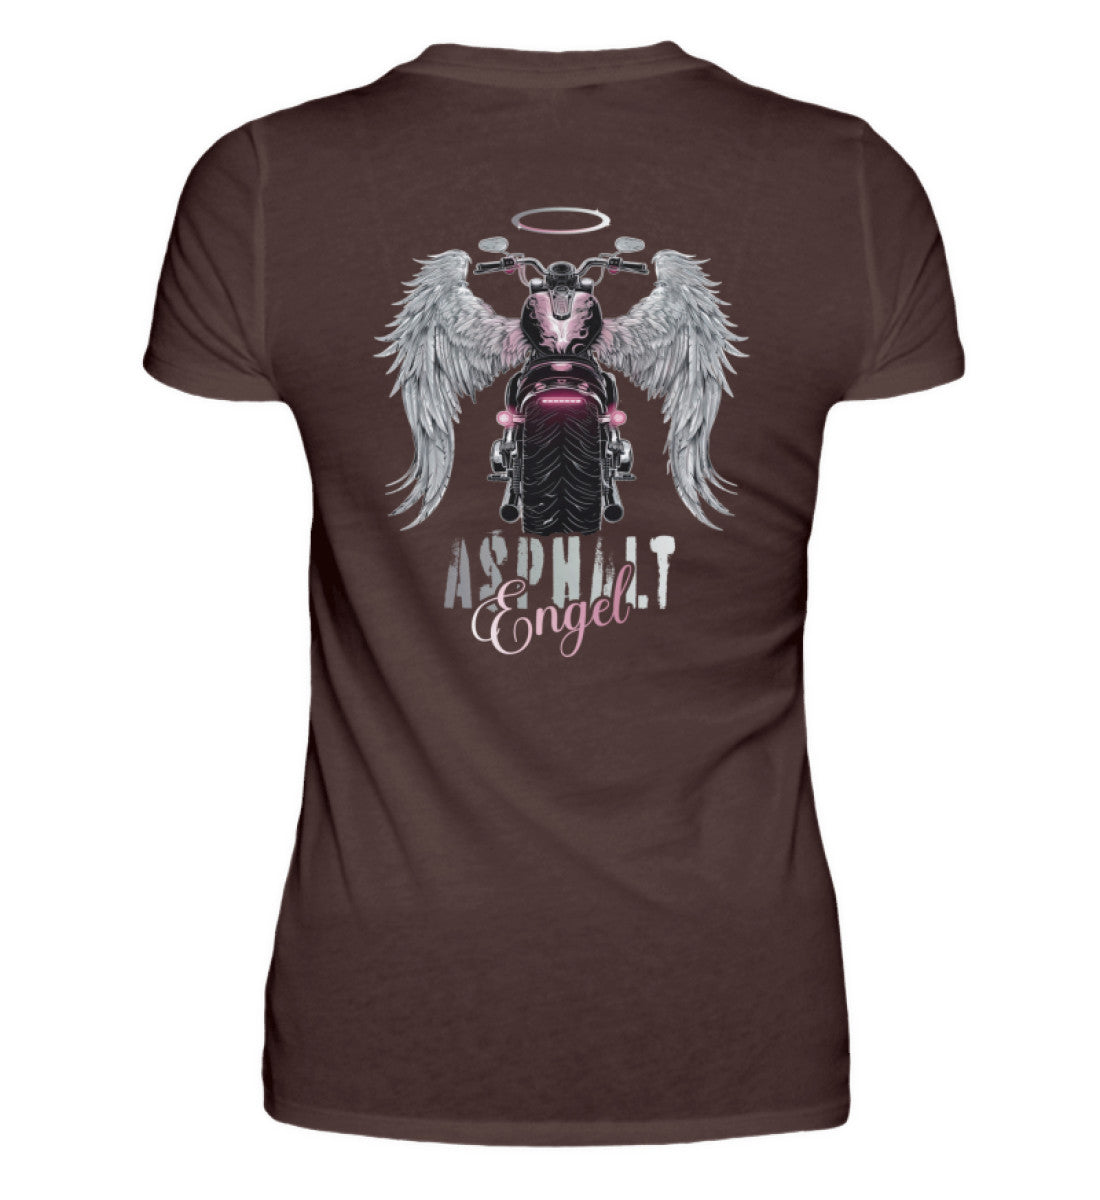 Ein Bikerin T-Shirt für Motorradfahrerinnen von Wingbikers mit dem Aufdruck, Asphalt Engel - mit Flügeln, - mit Back Print, in braun.